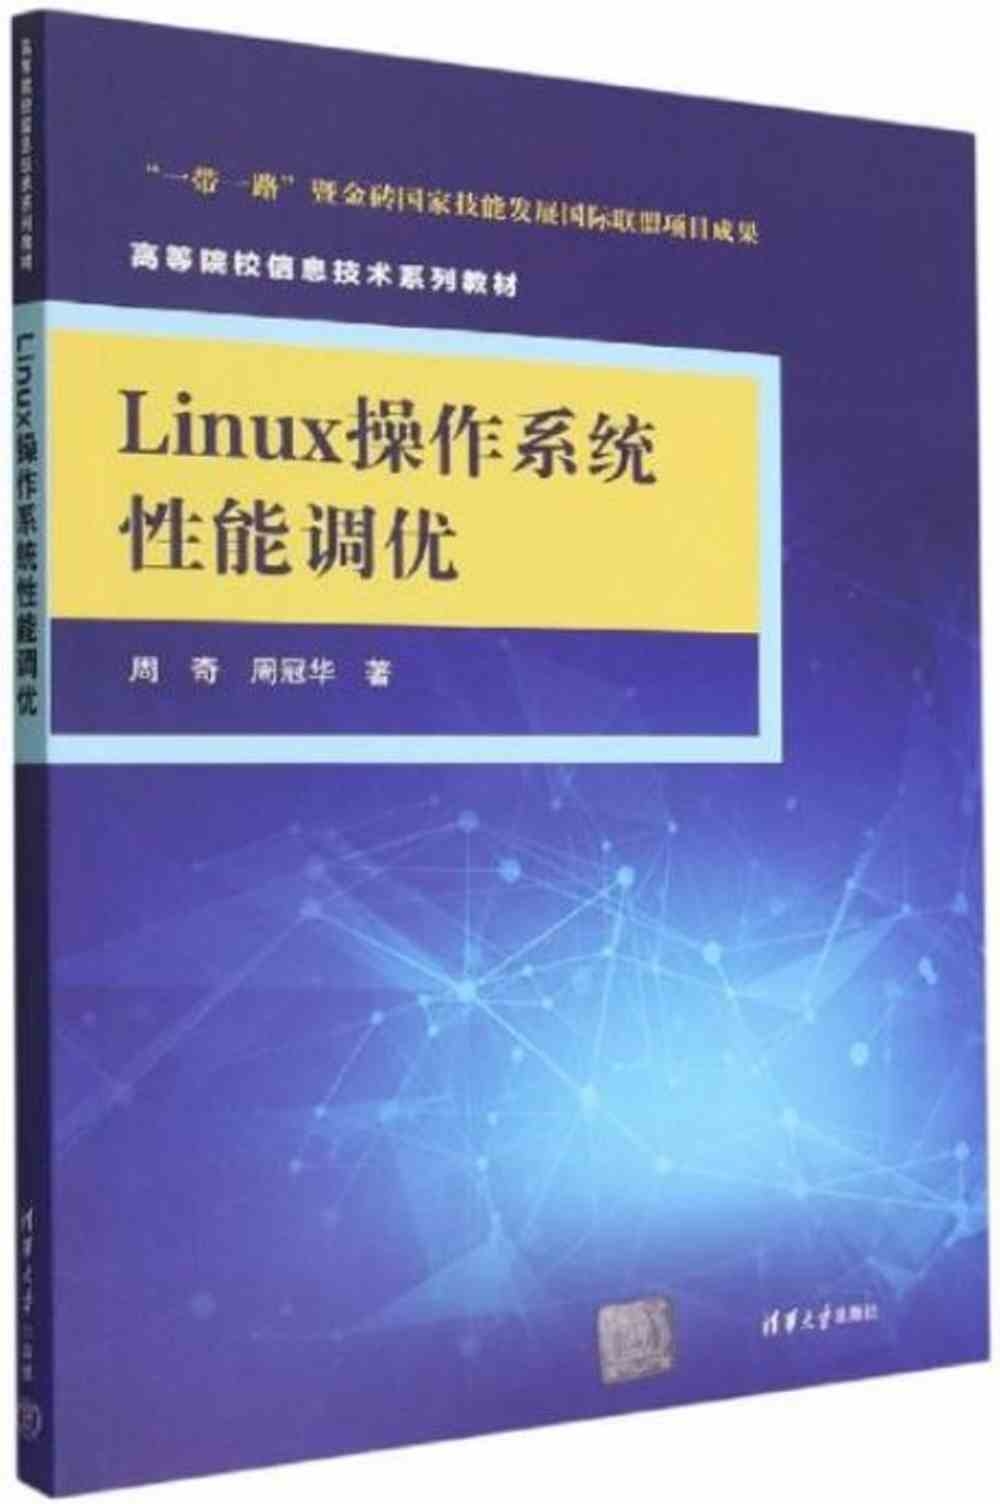 Linux操作系統性能調優